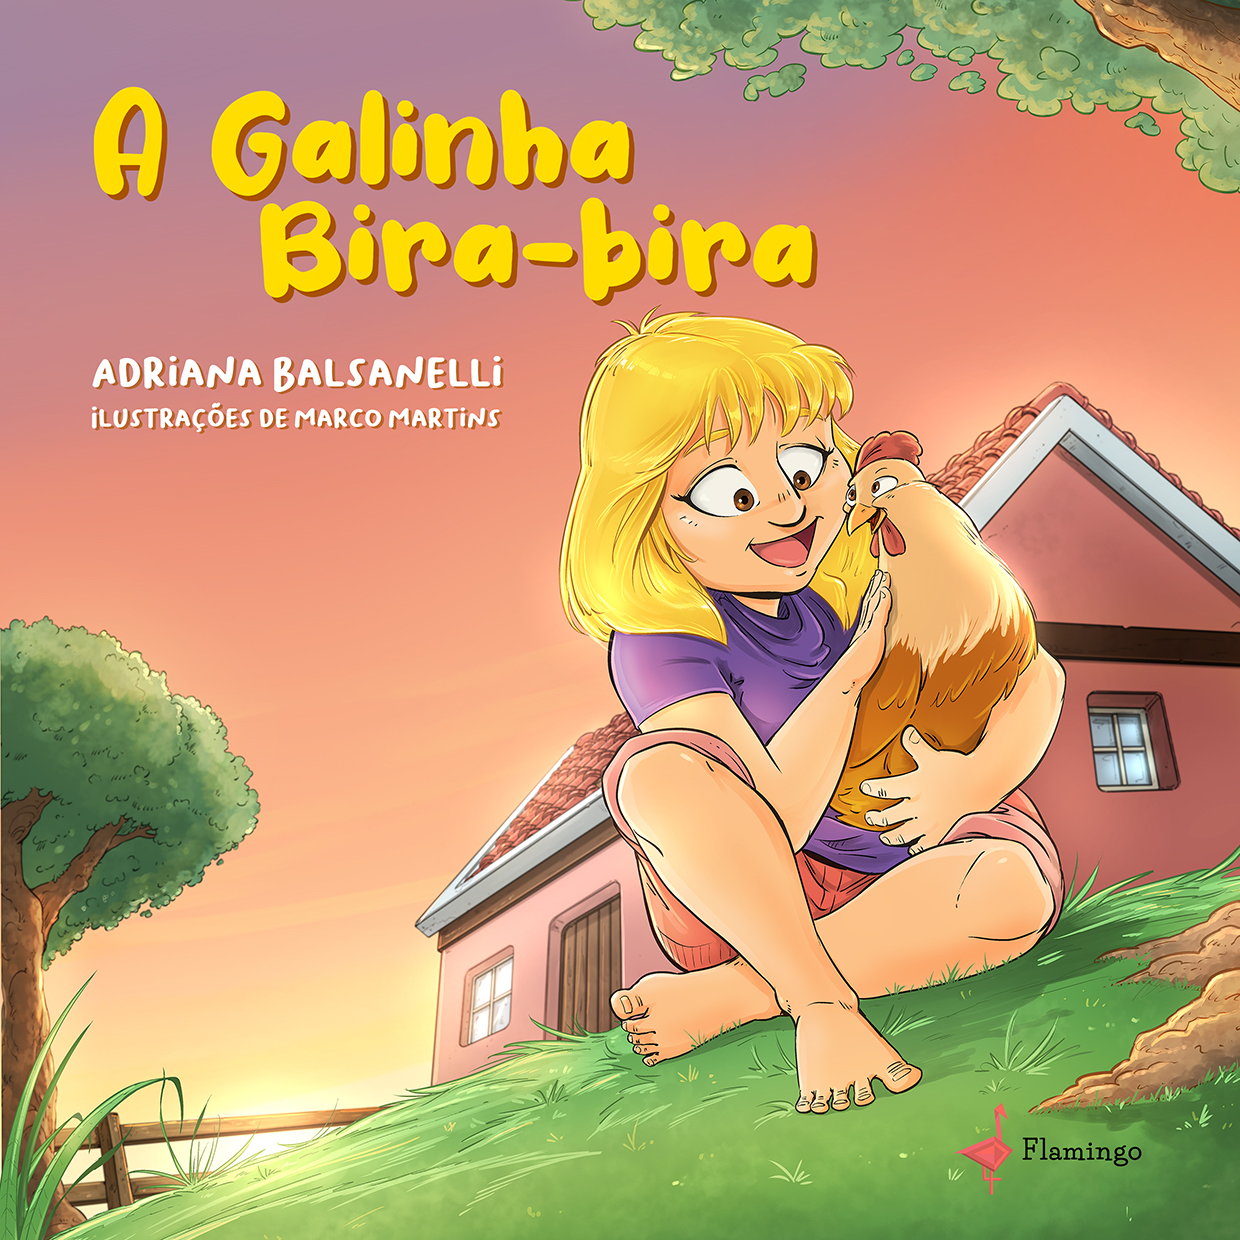 Adriana Balsanelli lança seu primeiro livro infantil, “A Galinha Bira-bira”